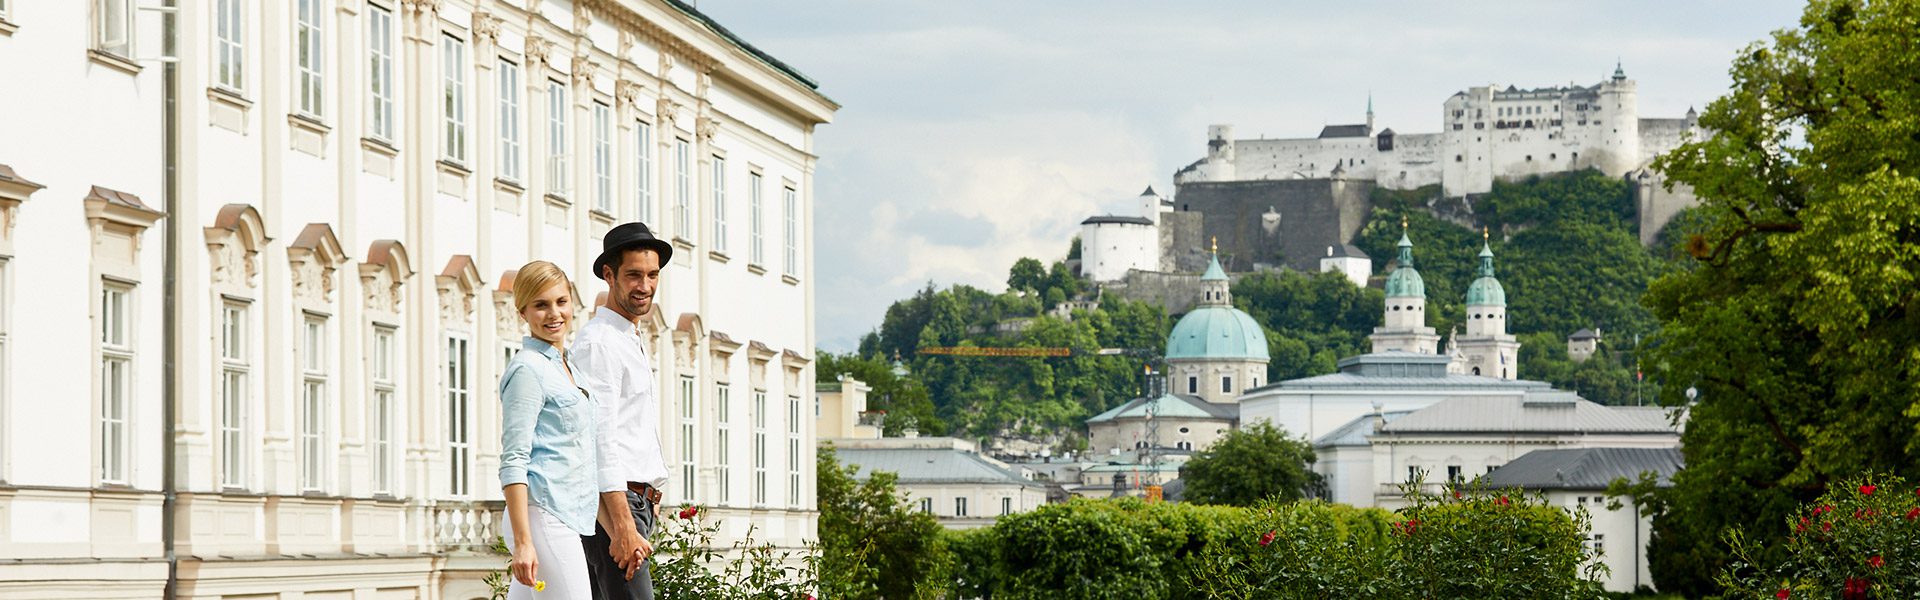 Sehenswürdigkeiten in der Stadt Salzburg